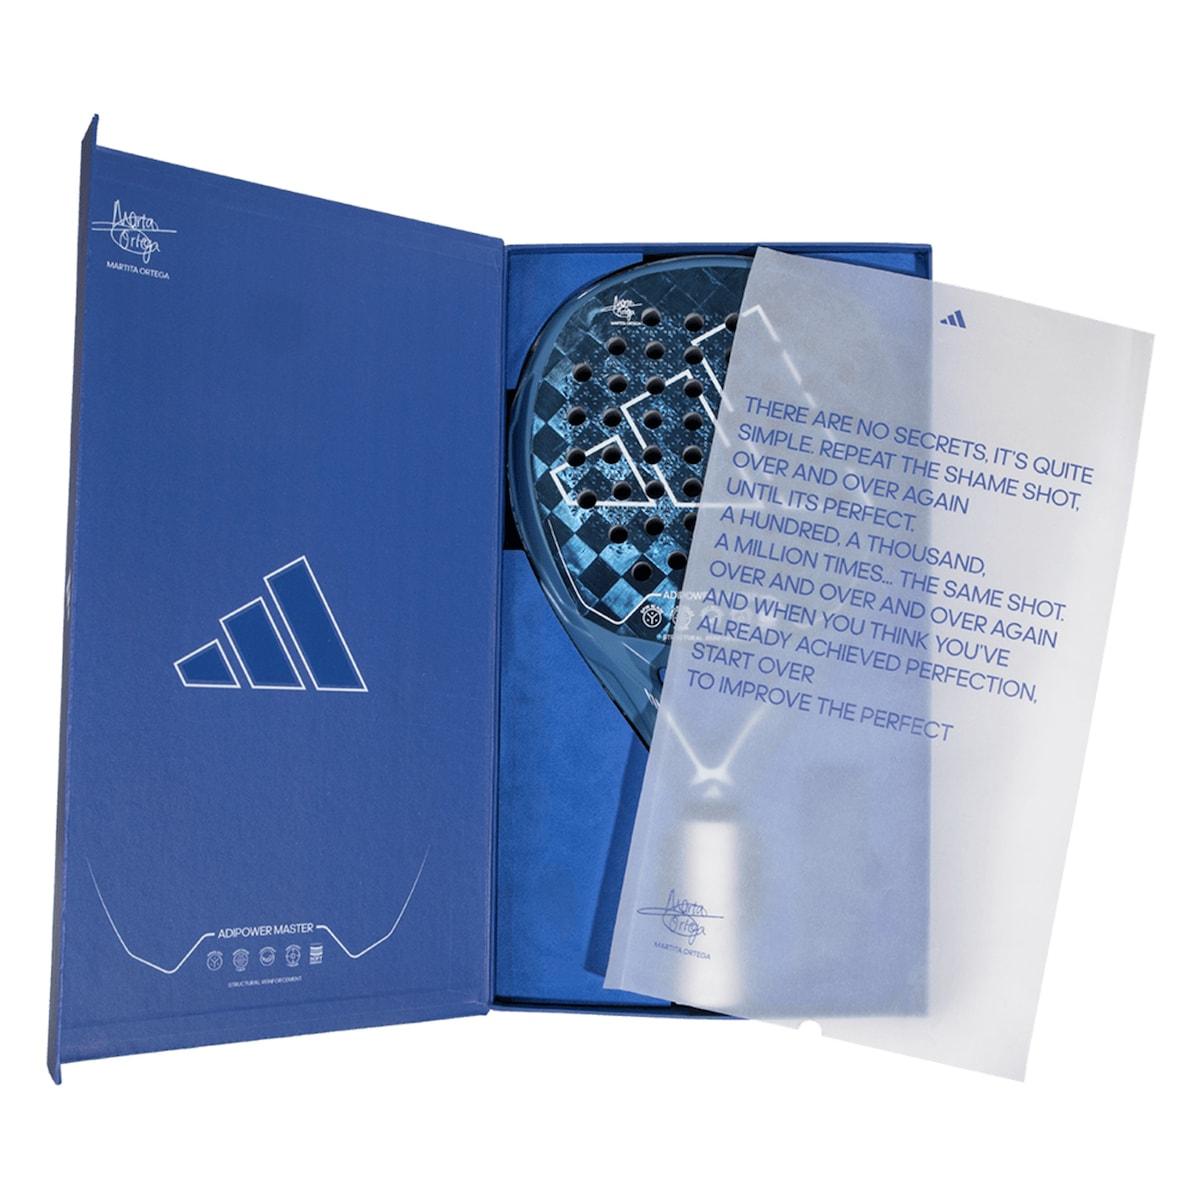 Adidas adipower MASTER Ltd 2023 Padelracket